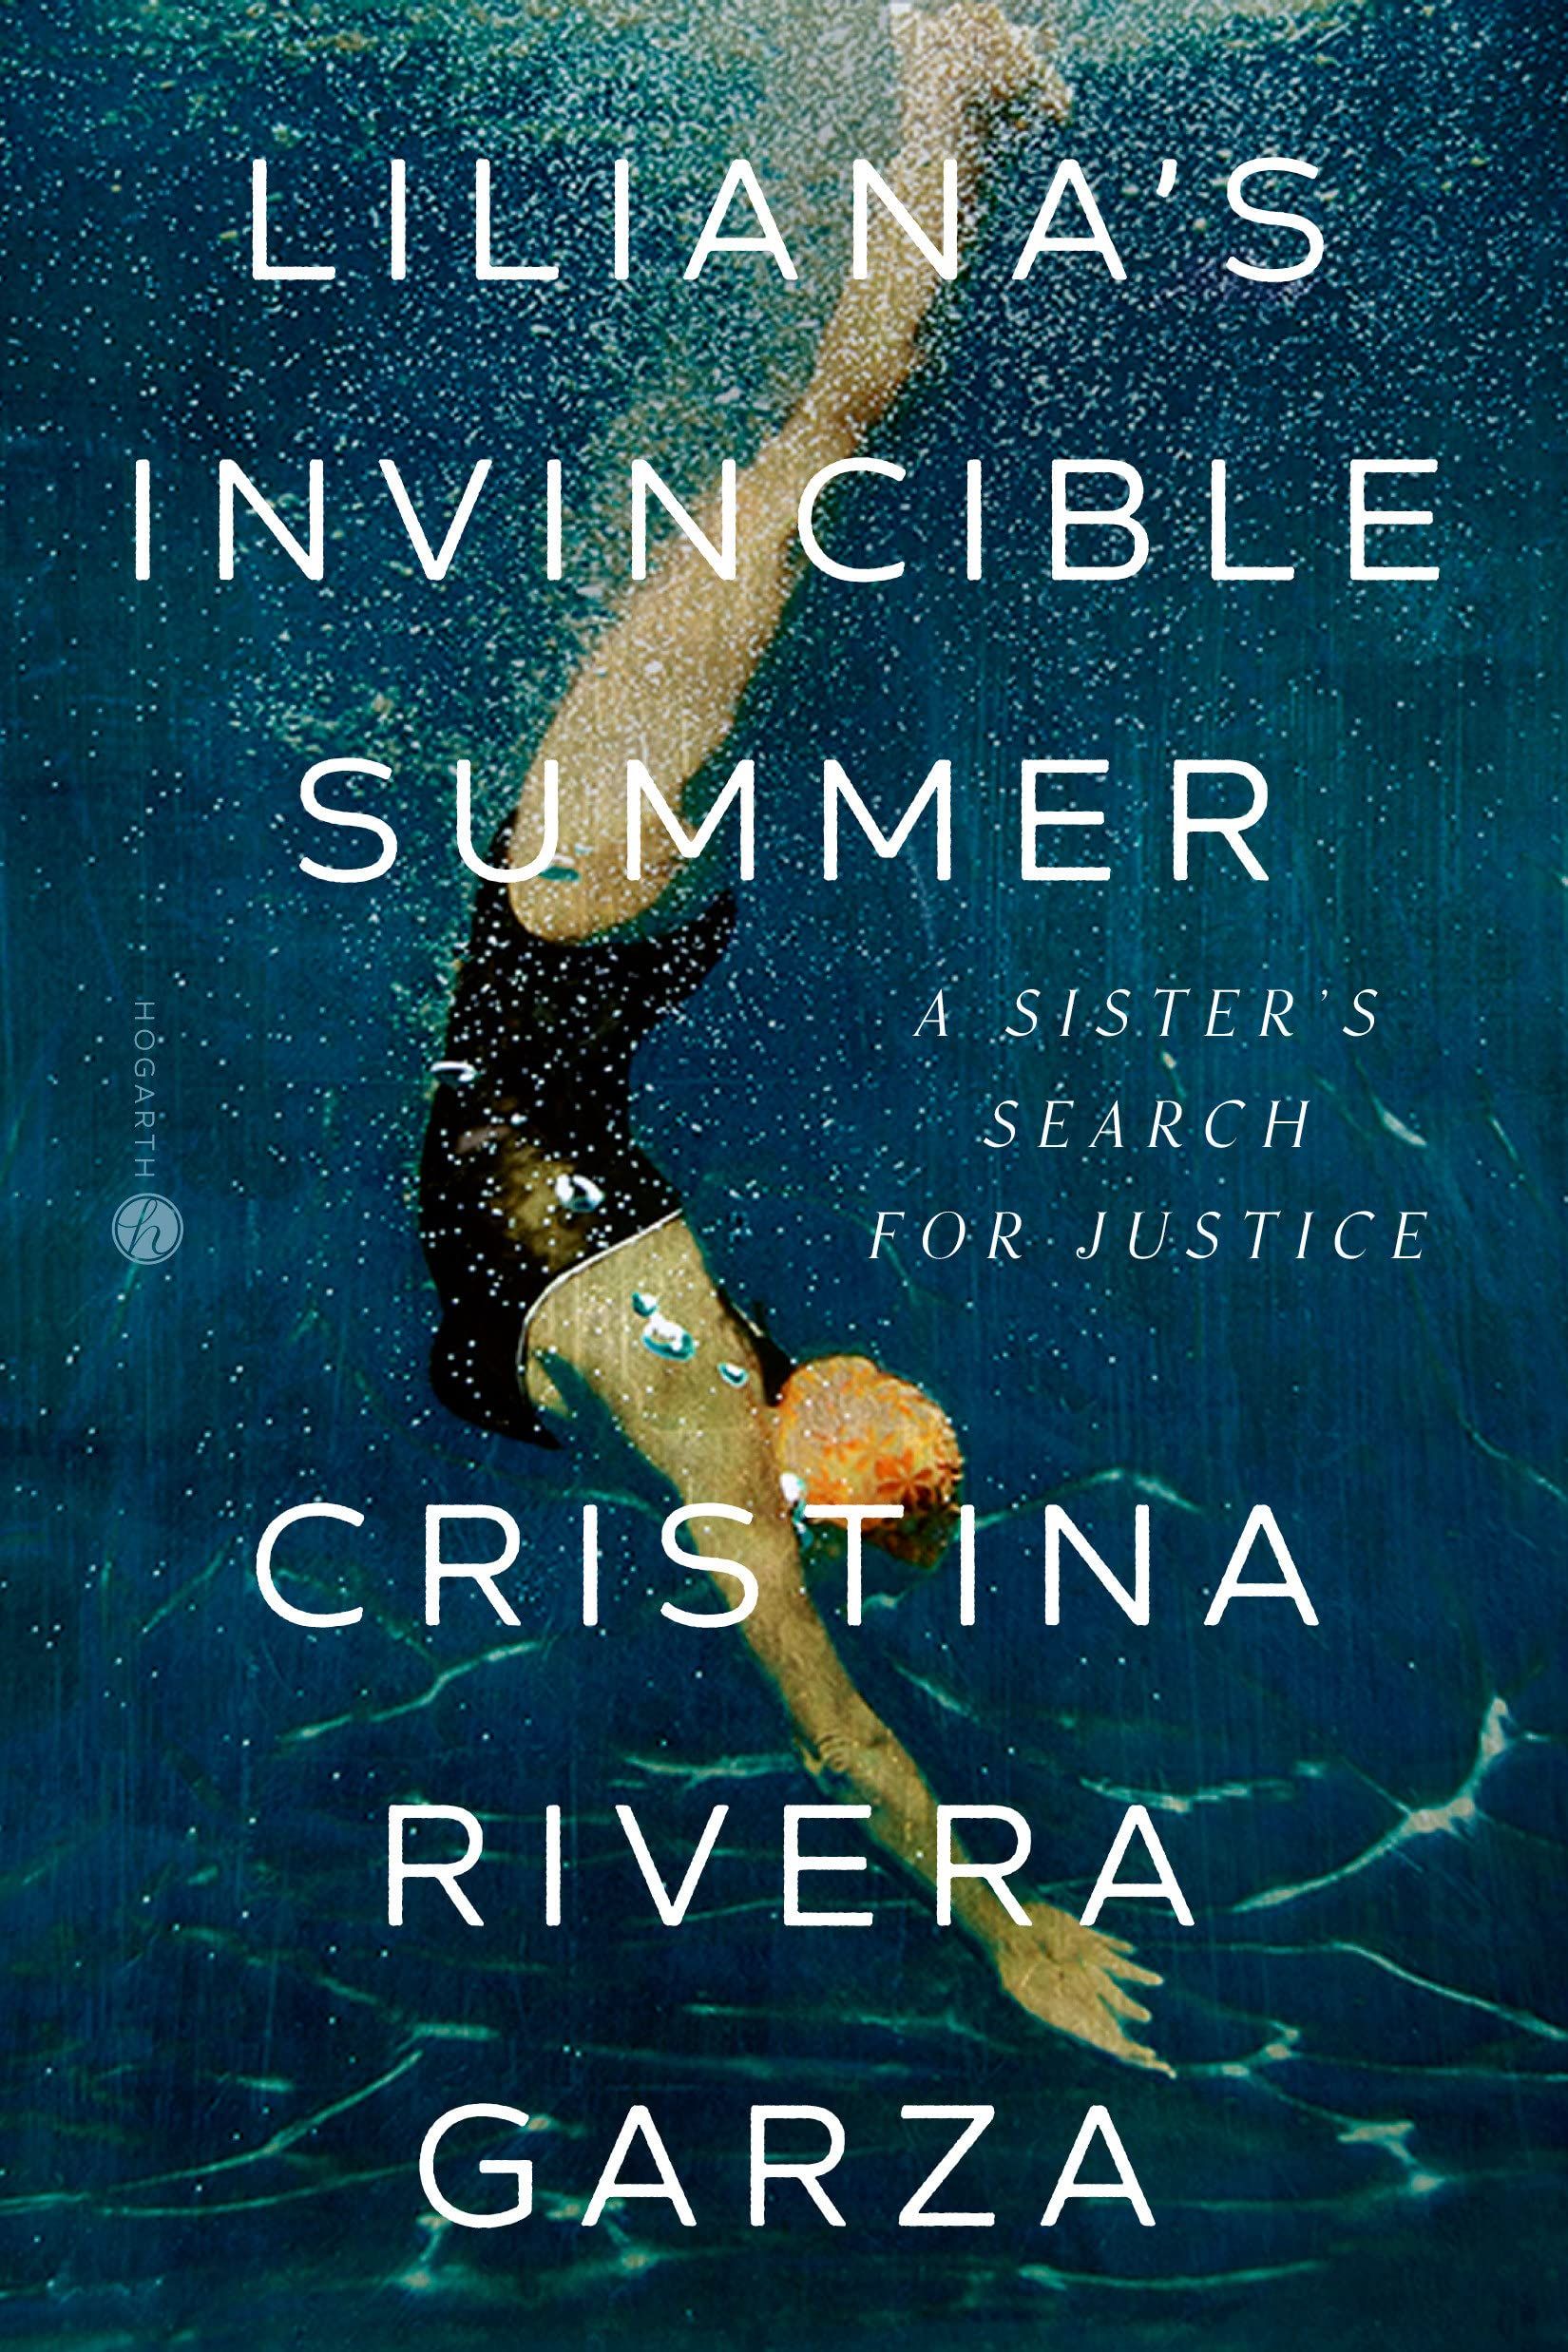 cover of Liliana's Invincible Summer: A Sister's Search for Justice by Cristina Rivera Garza